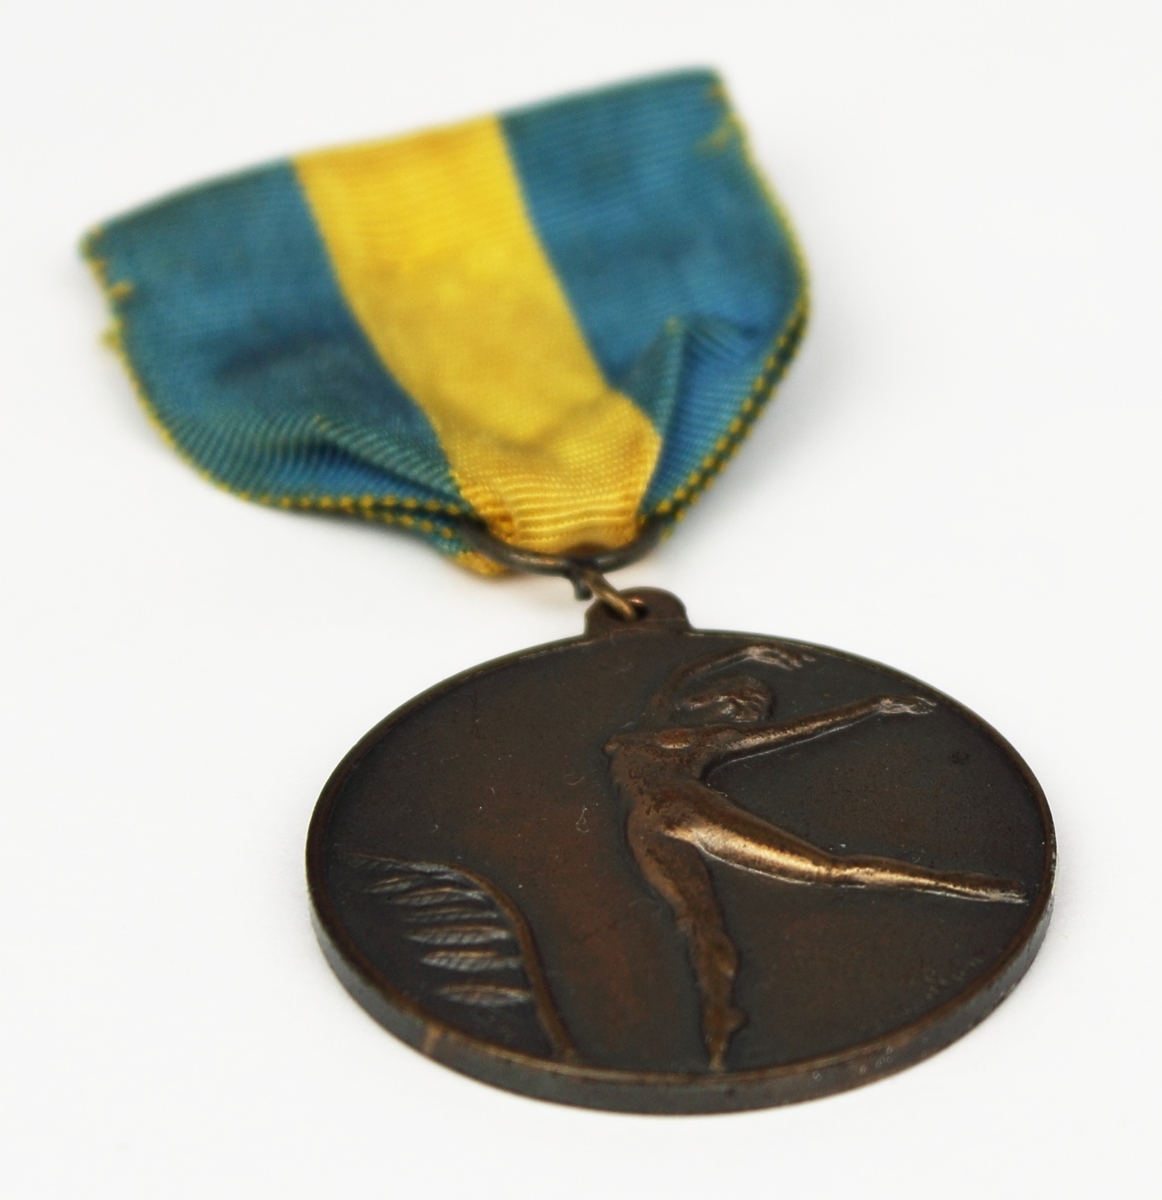 Medalj i brons fäst på blågult band. Medaljen har rund form med en naken kvinna i relief på framsidan.